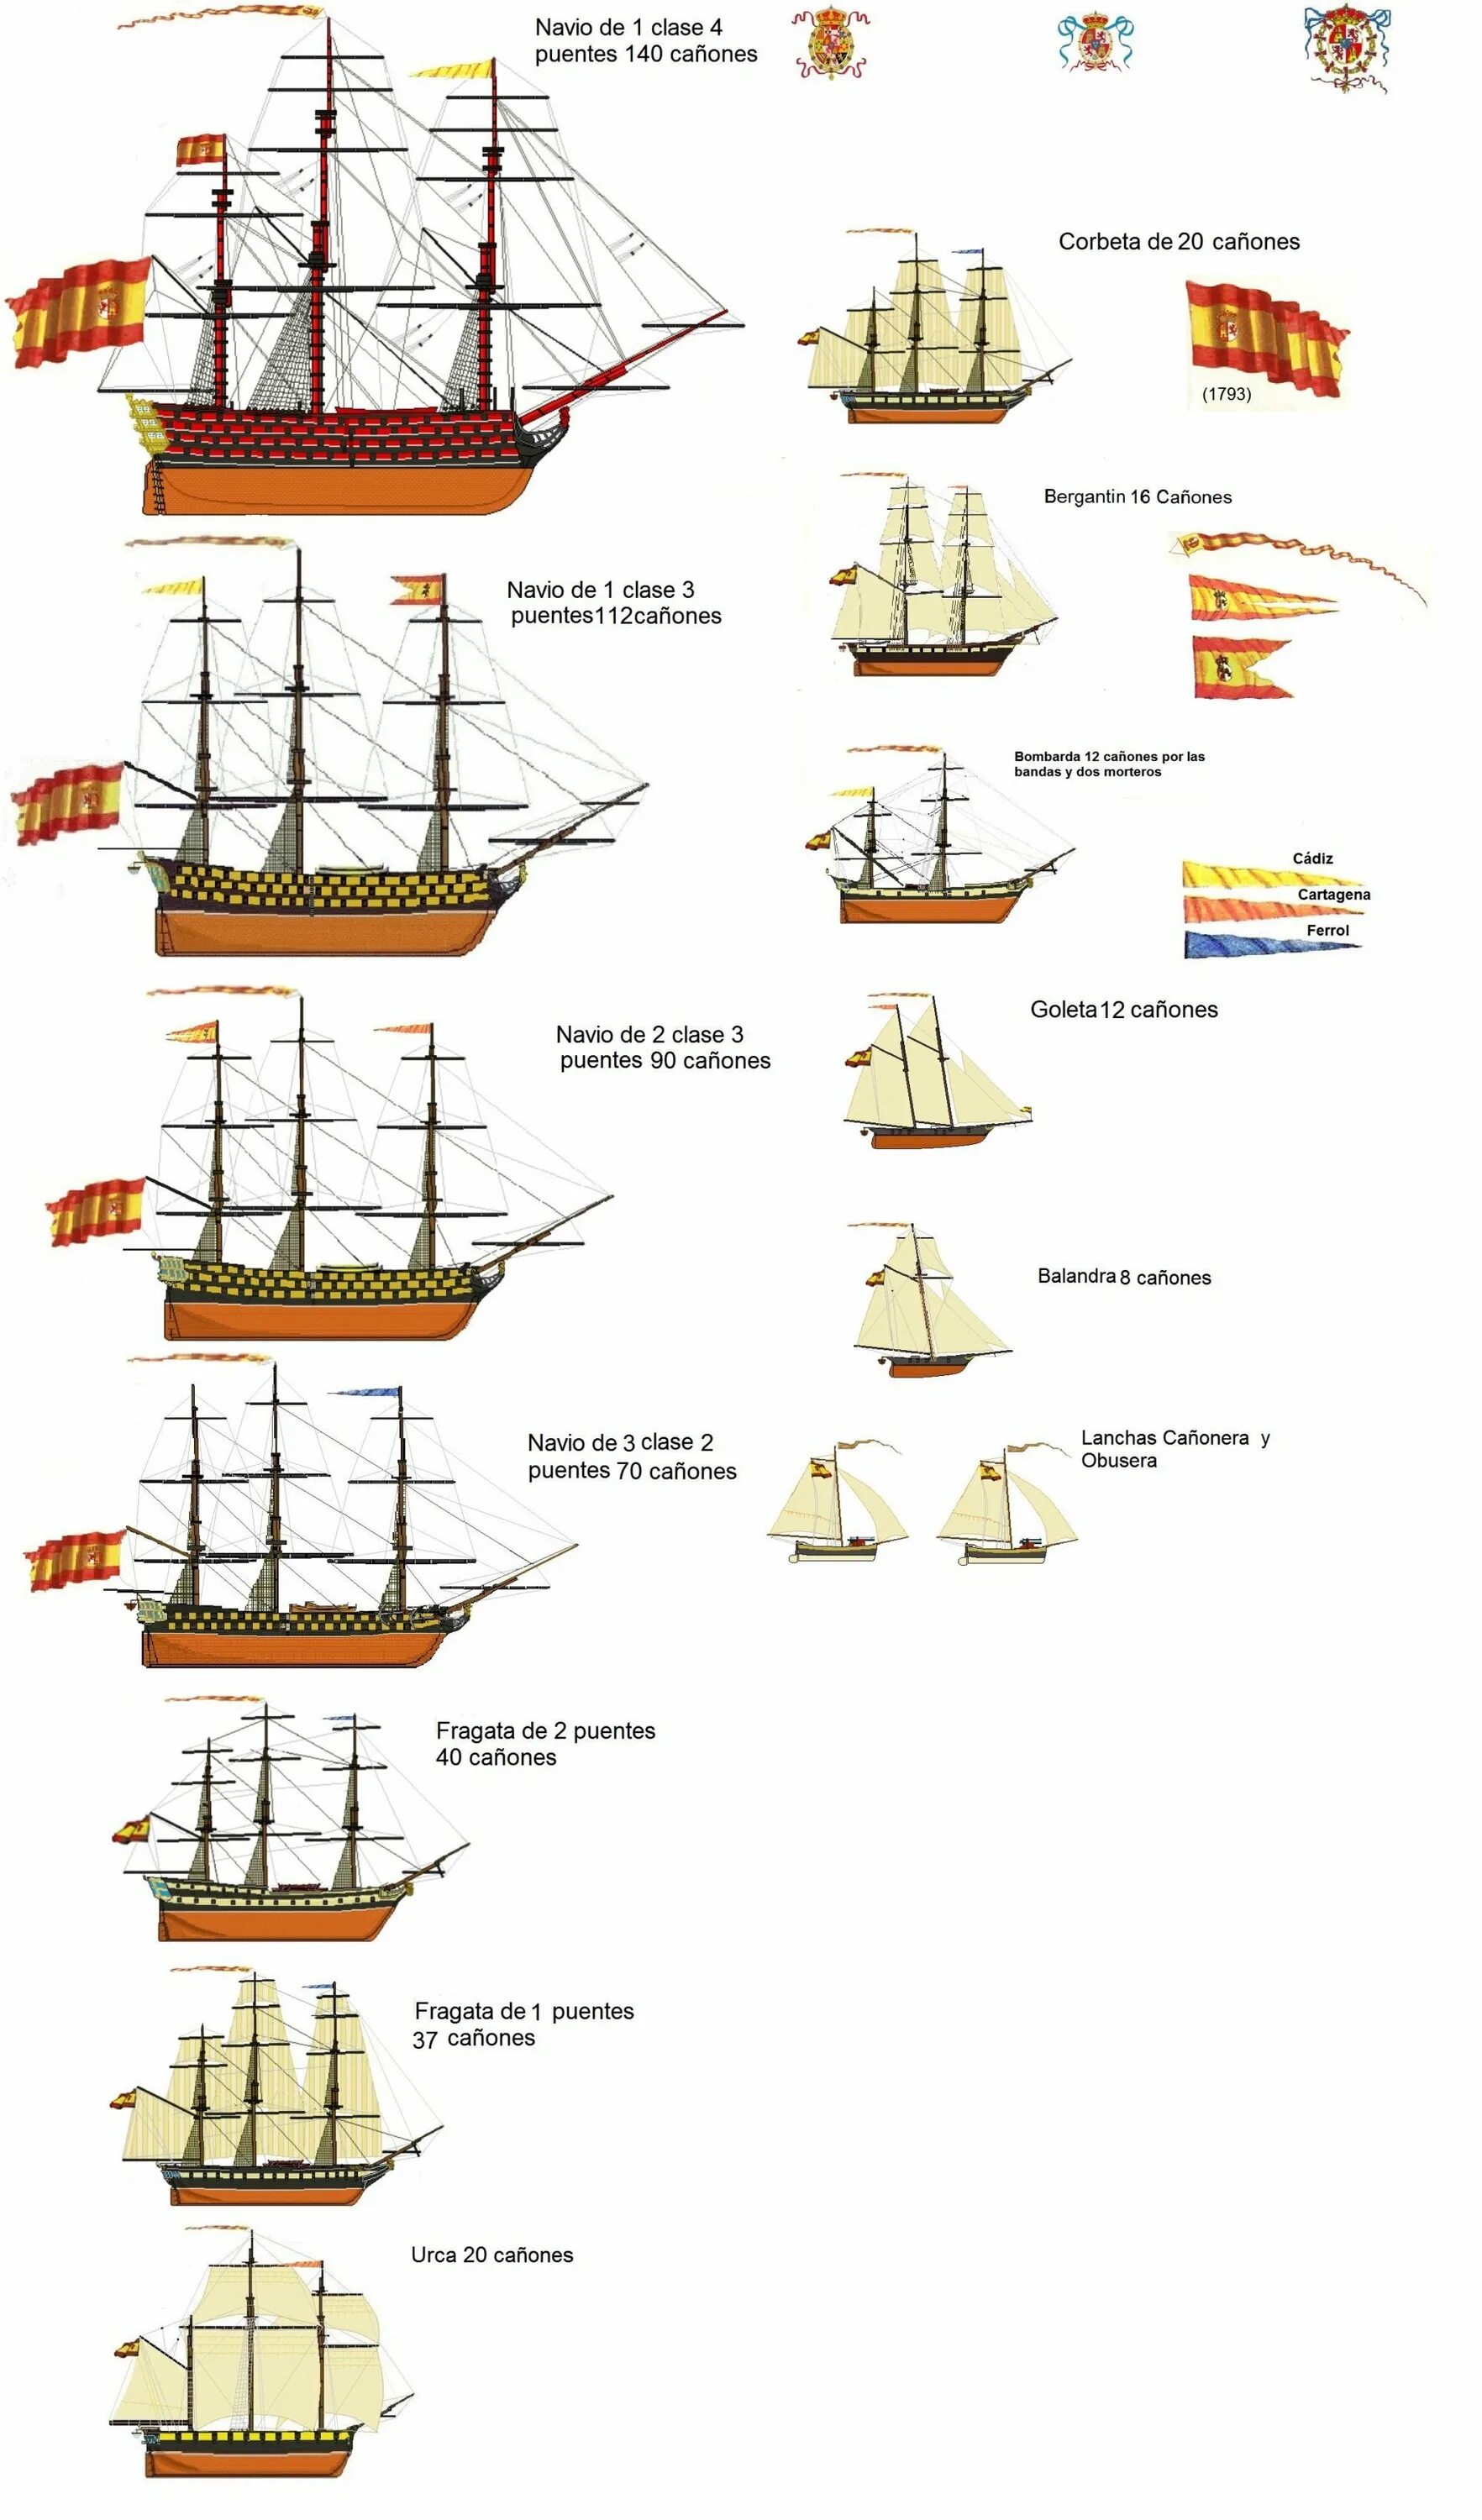 Тип парусного судна. Классификация парусных кораблей. Классификация военных парусных кораблей 18 века. Классификация парусных кораблей 17 века. Классификация парусных судов 18 века.